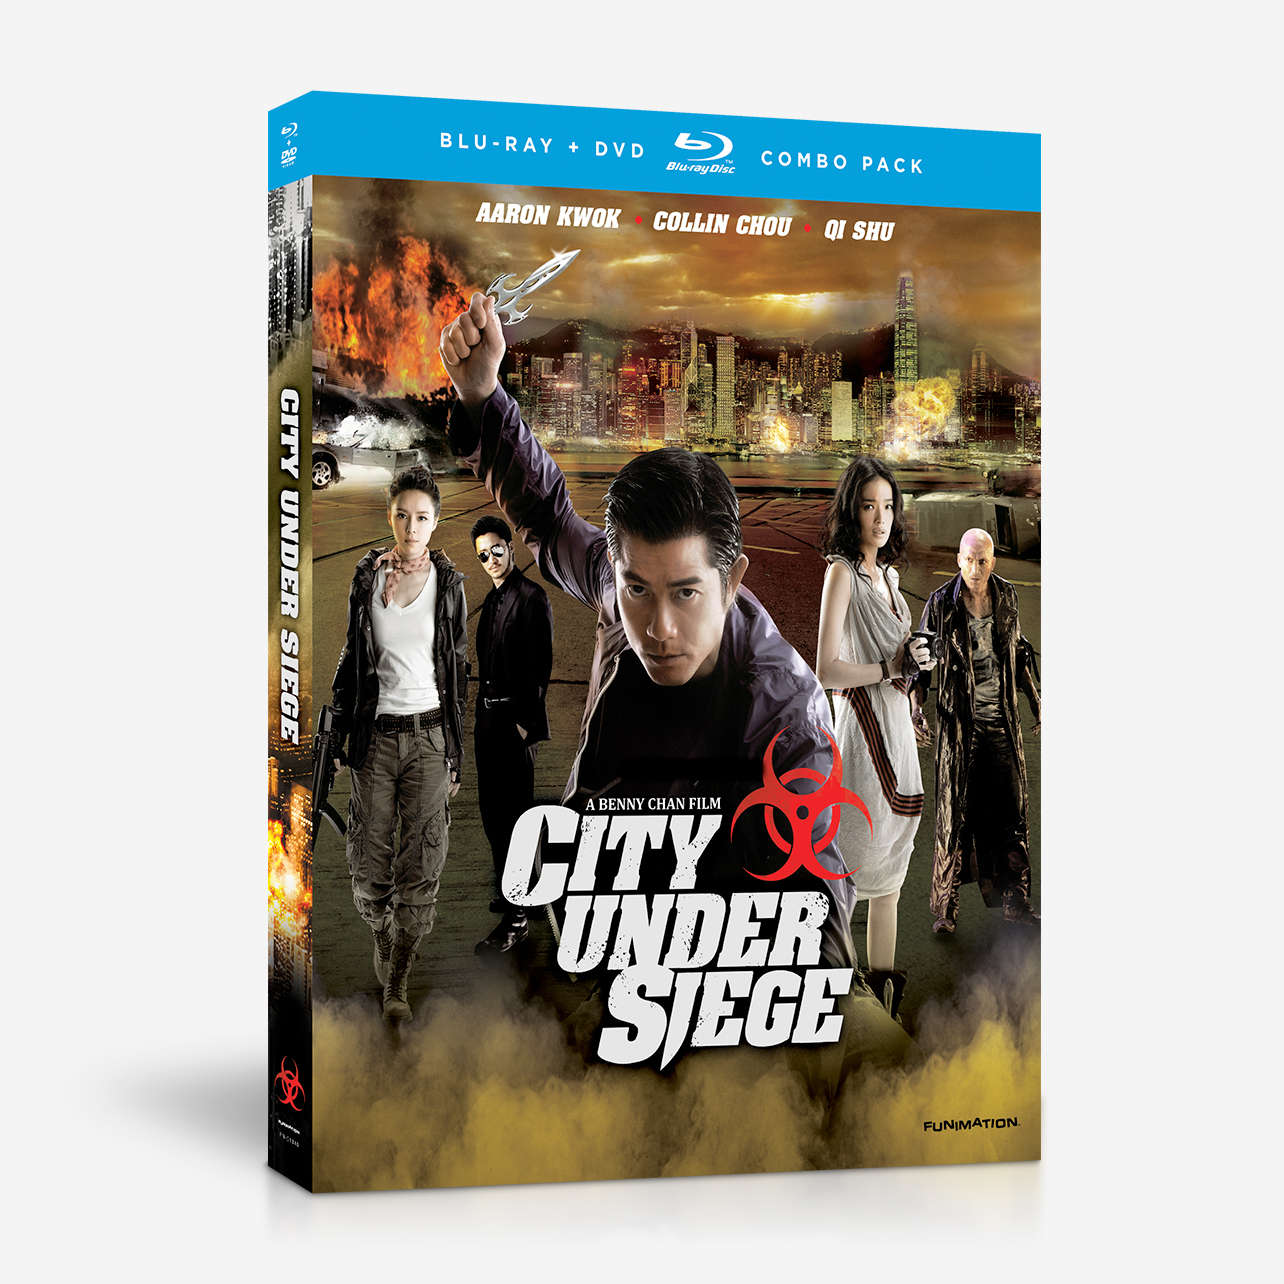 City under siege movie download